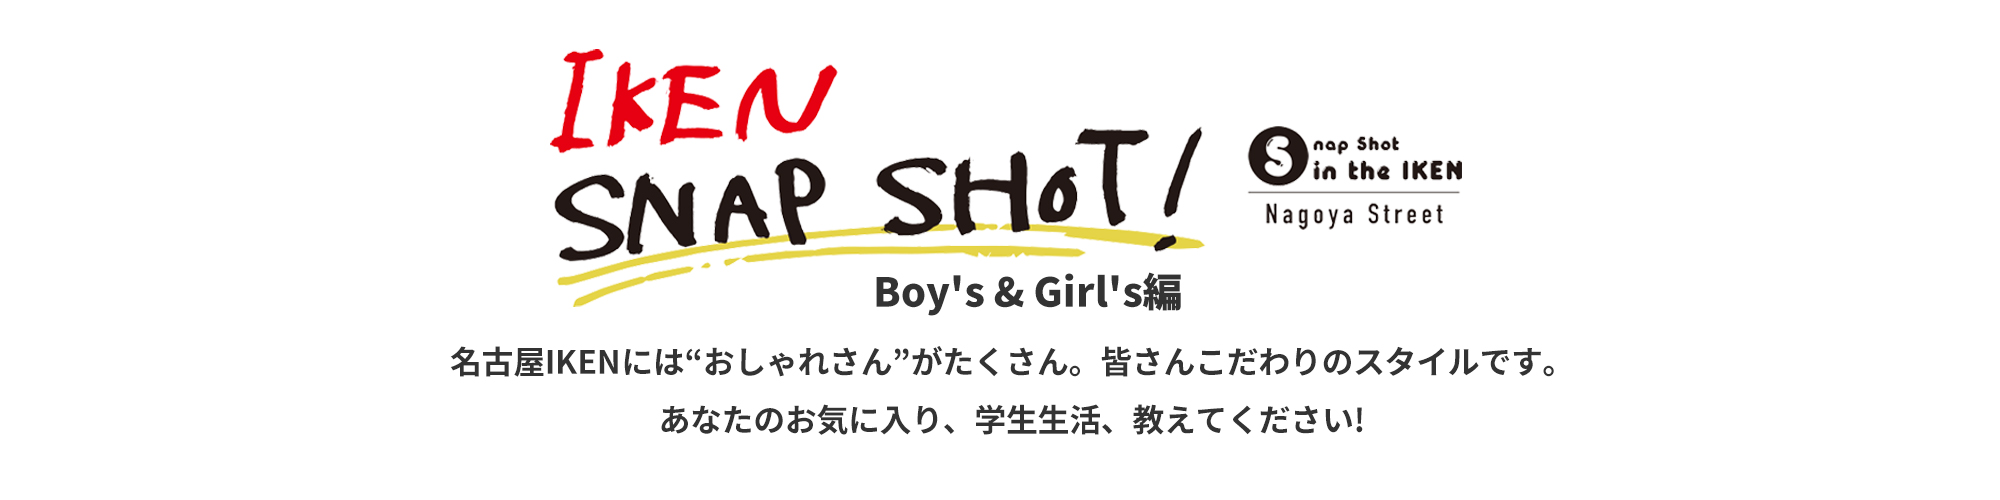 IKEN SNAP SHOT! Boy's & Girl's編 名古屋医健には“おしゃれさん”がたくさん。皆さんこだわりのスタイルです。あなたのお気に入り、教えてください!